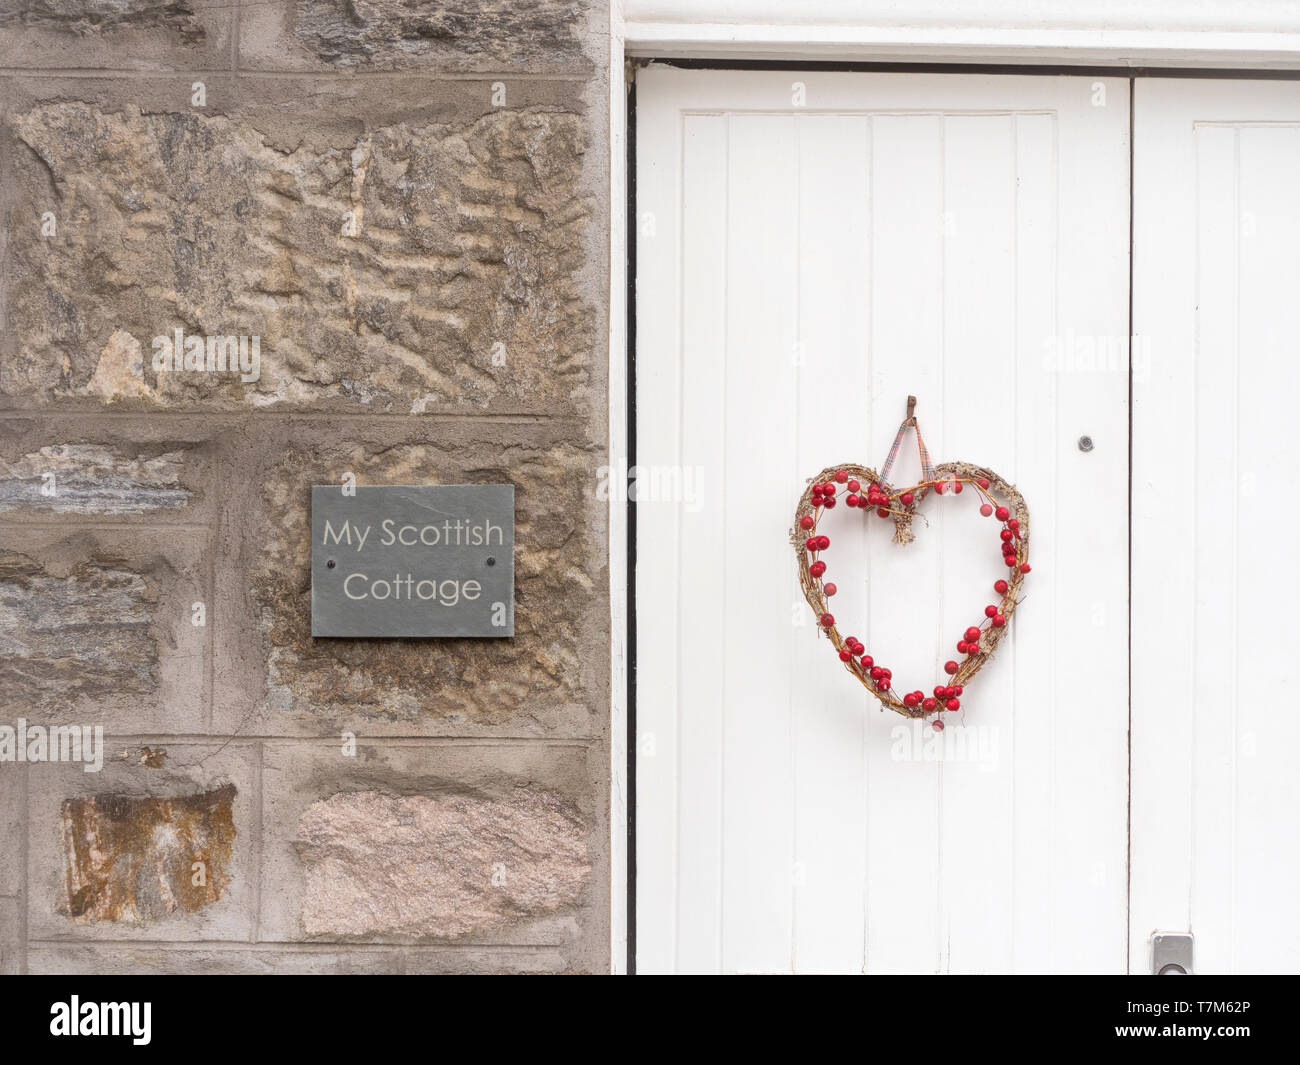 Scottish Cottage, Scotland, UK Stock Photo